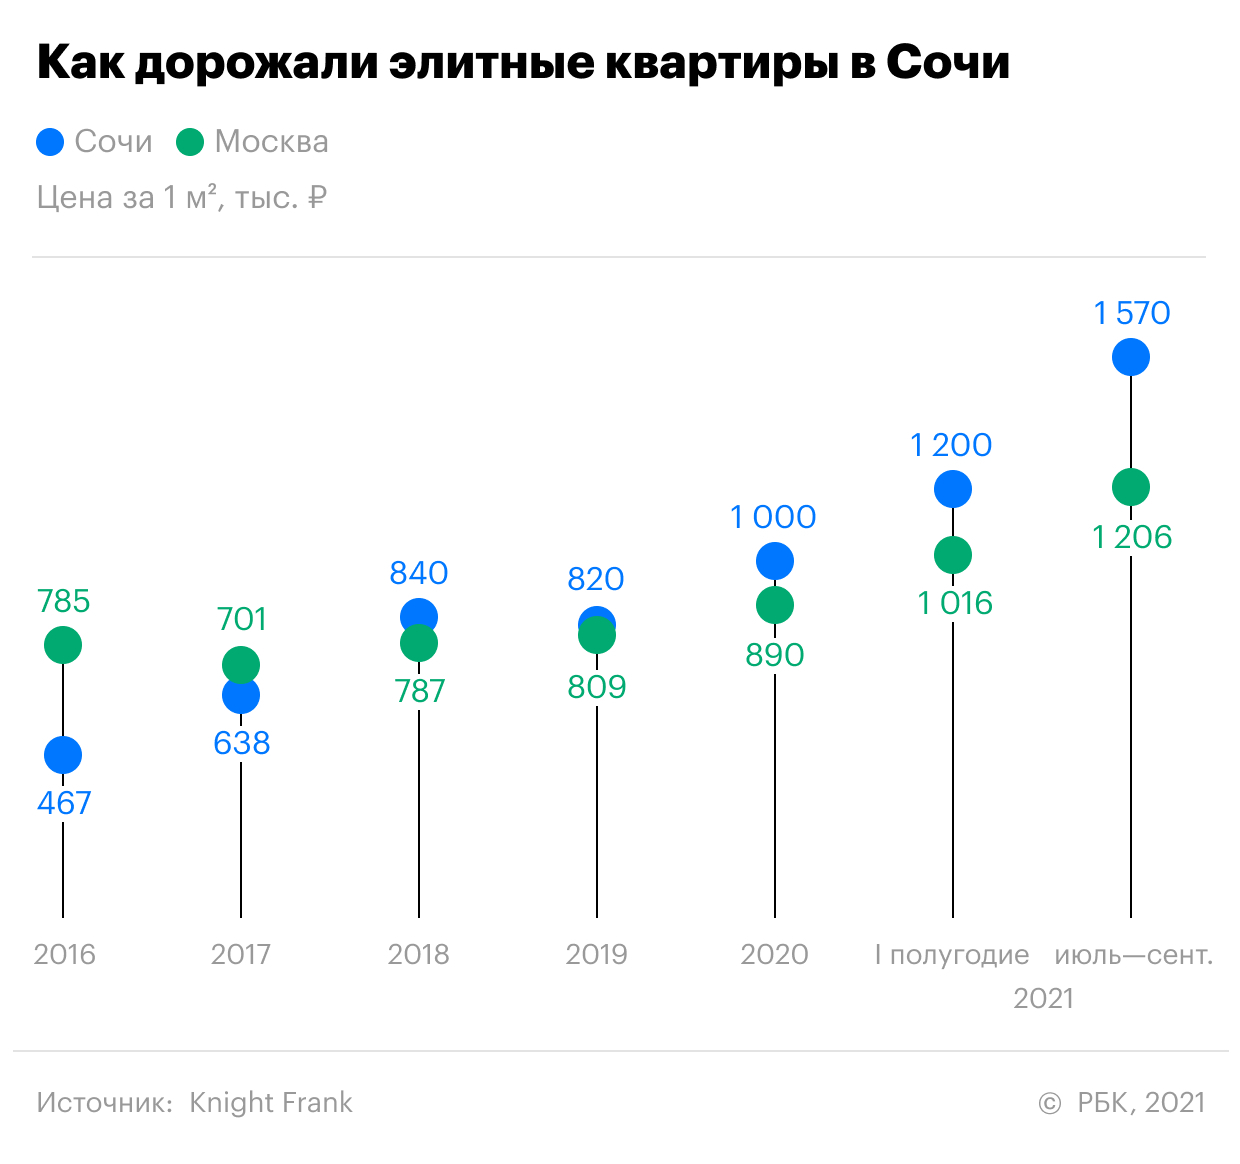 Как цены на элитные квартиры в Сочи обогнали московские. Инфографика